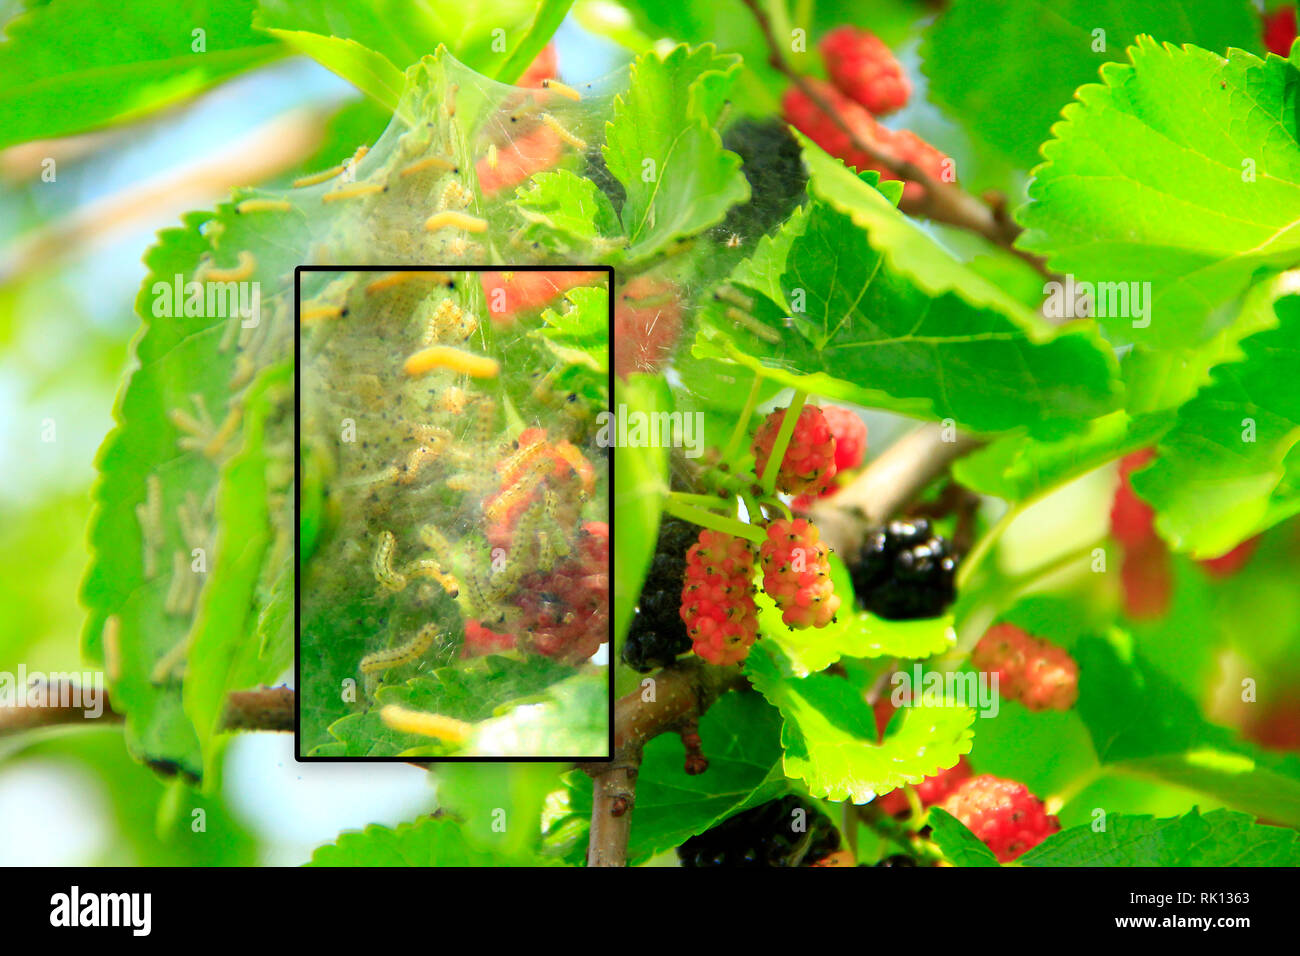 Raupen fressen Blätter des Maulbeerbaumes Makro. Zweig mit ripe Mulberry und Bombyx mori. Insekten Schädlinge fressen grüne Blätter des Maulbeerbaumes hautnah. Stockfoto